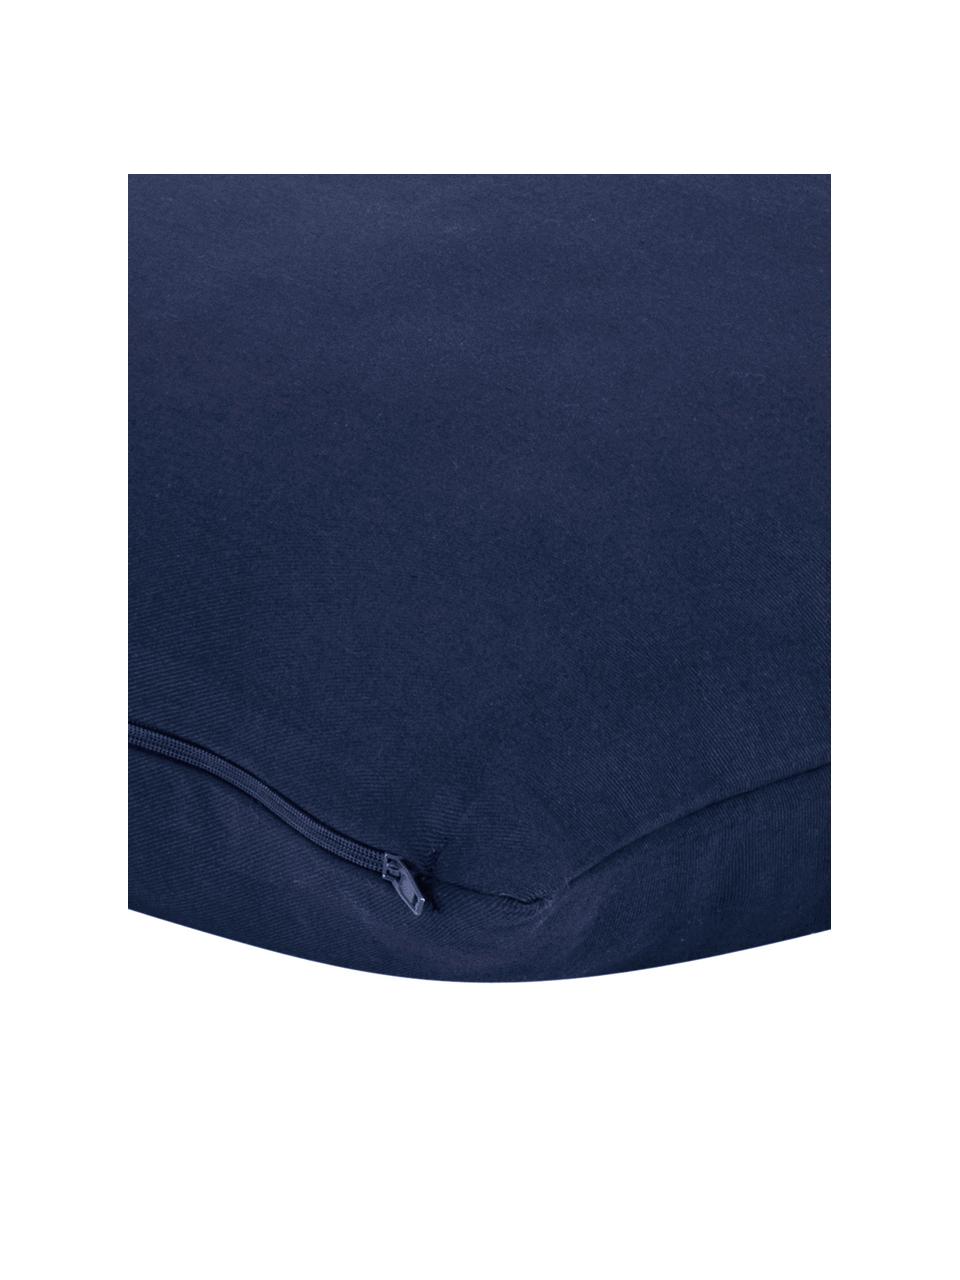 Federa arredo in cotone blu scuro Mads, 100% cotone, Blu navy, Larg. 40 x Lung. 40 cm